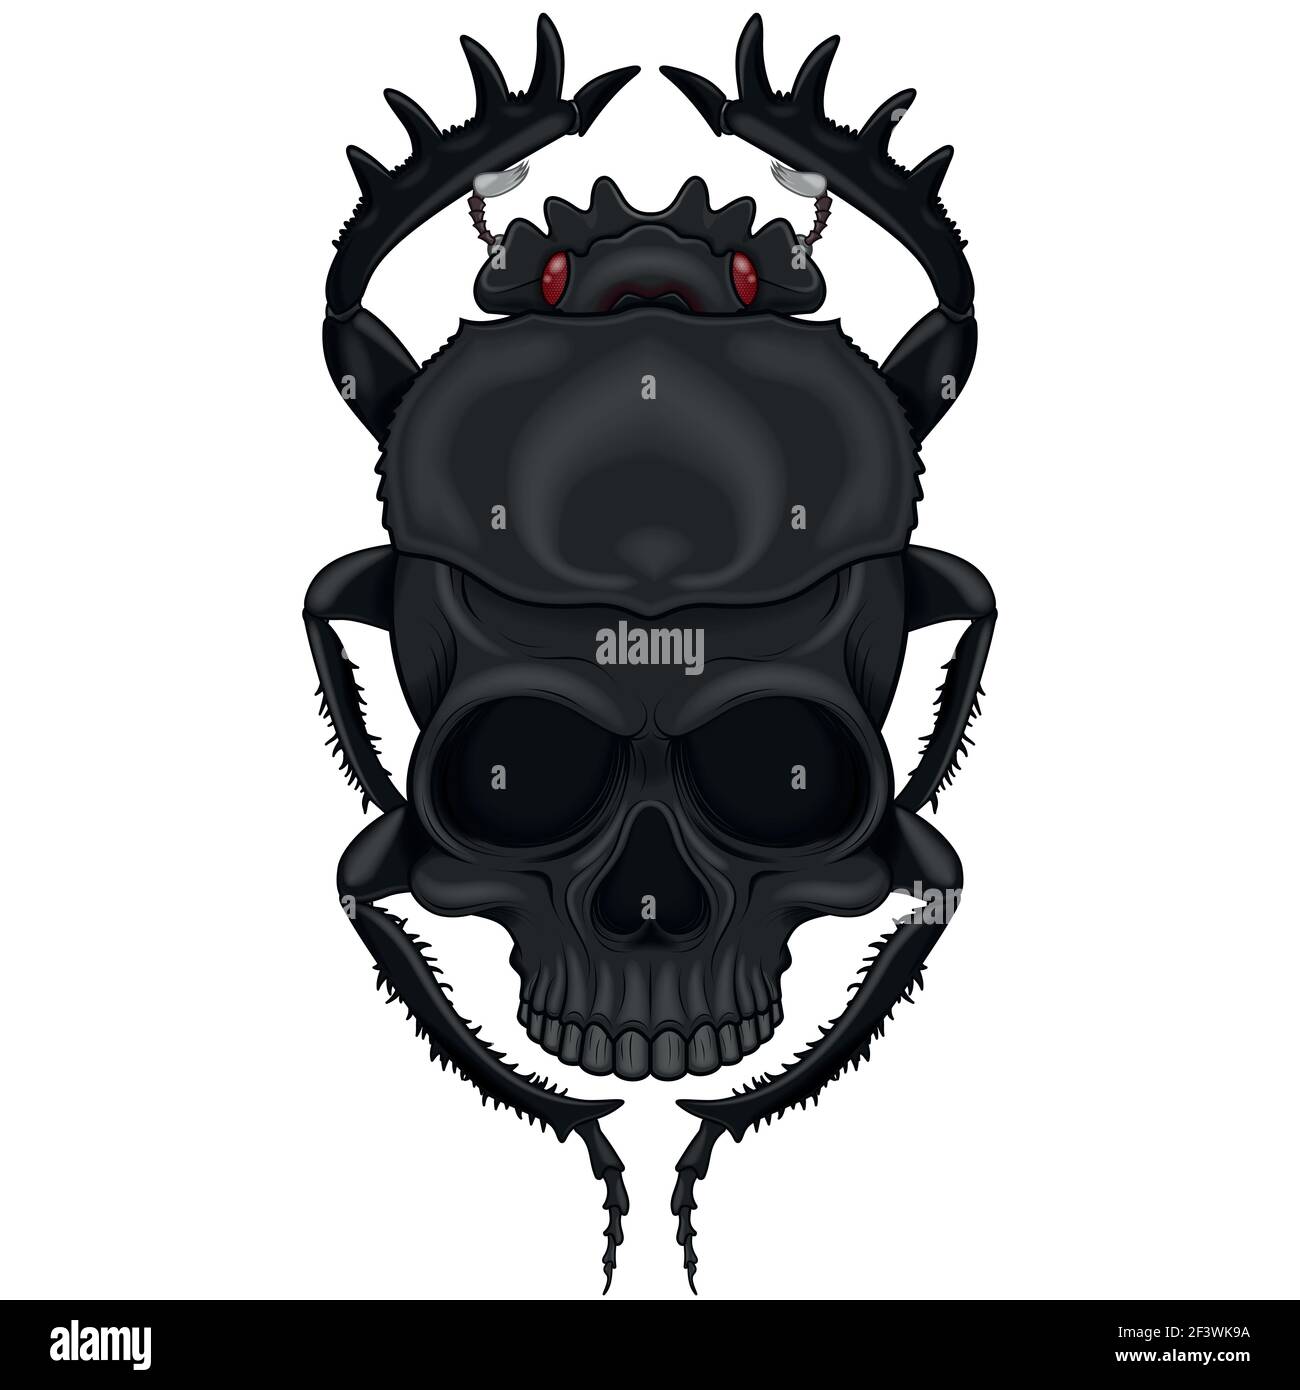 Diseño vectorial de escarabajo de miedo con cráneo, ilustración de escarabajo en forma de muerte Ilustración del Vector